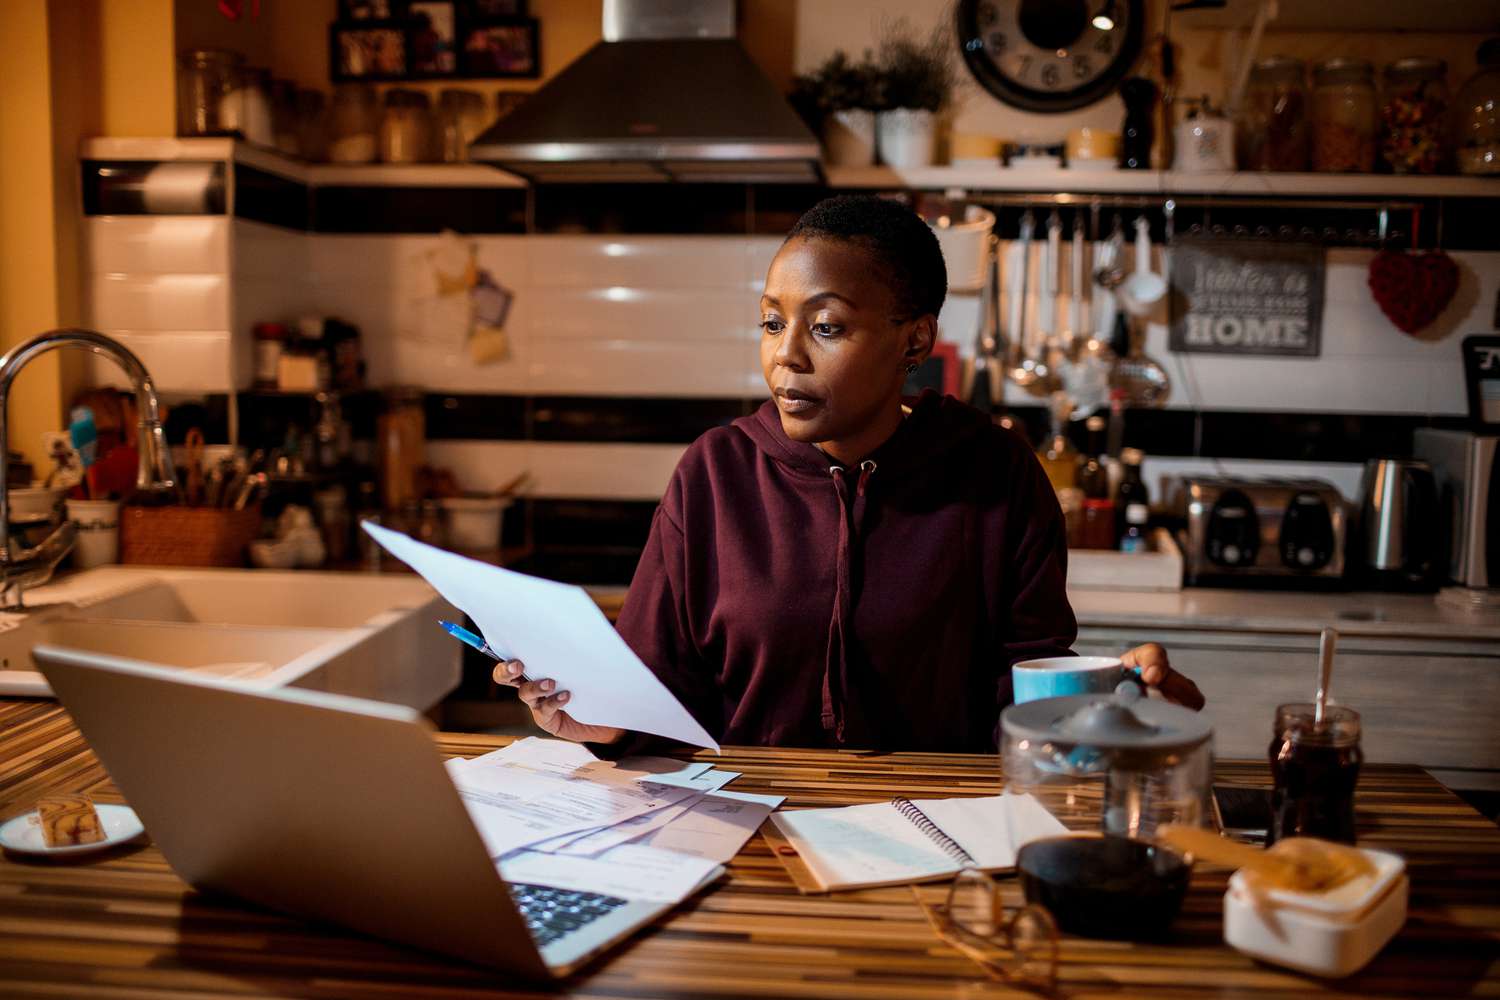 一名妇女坐在厨房桌子旁，面前是一台打开的笔记本电脑，她正专注地看着手里的一份文件